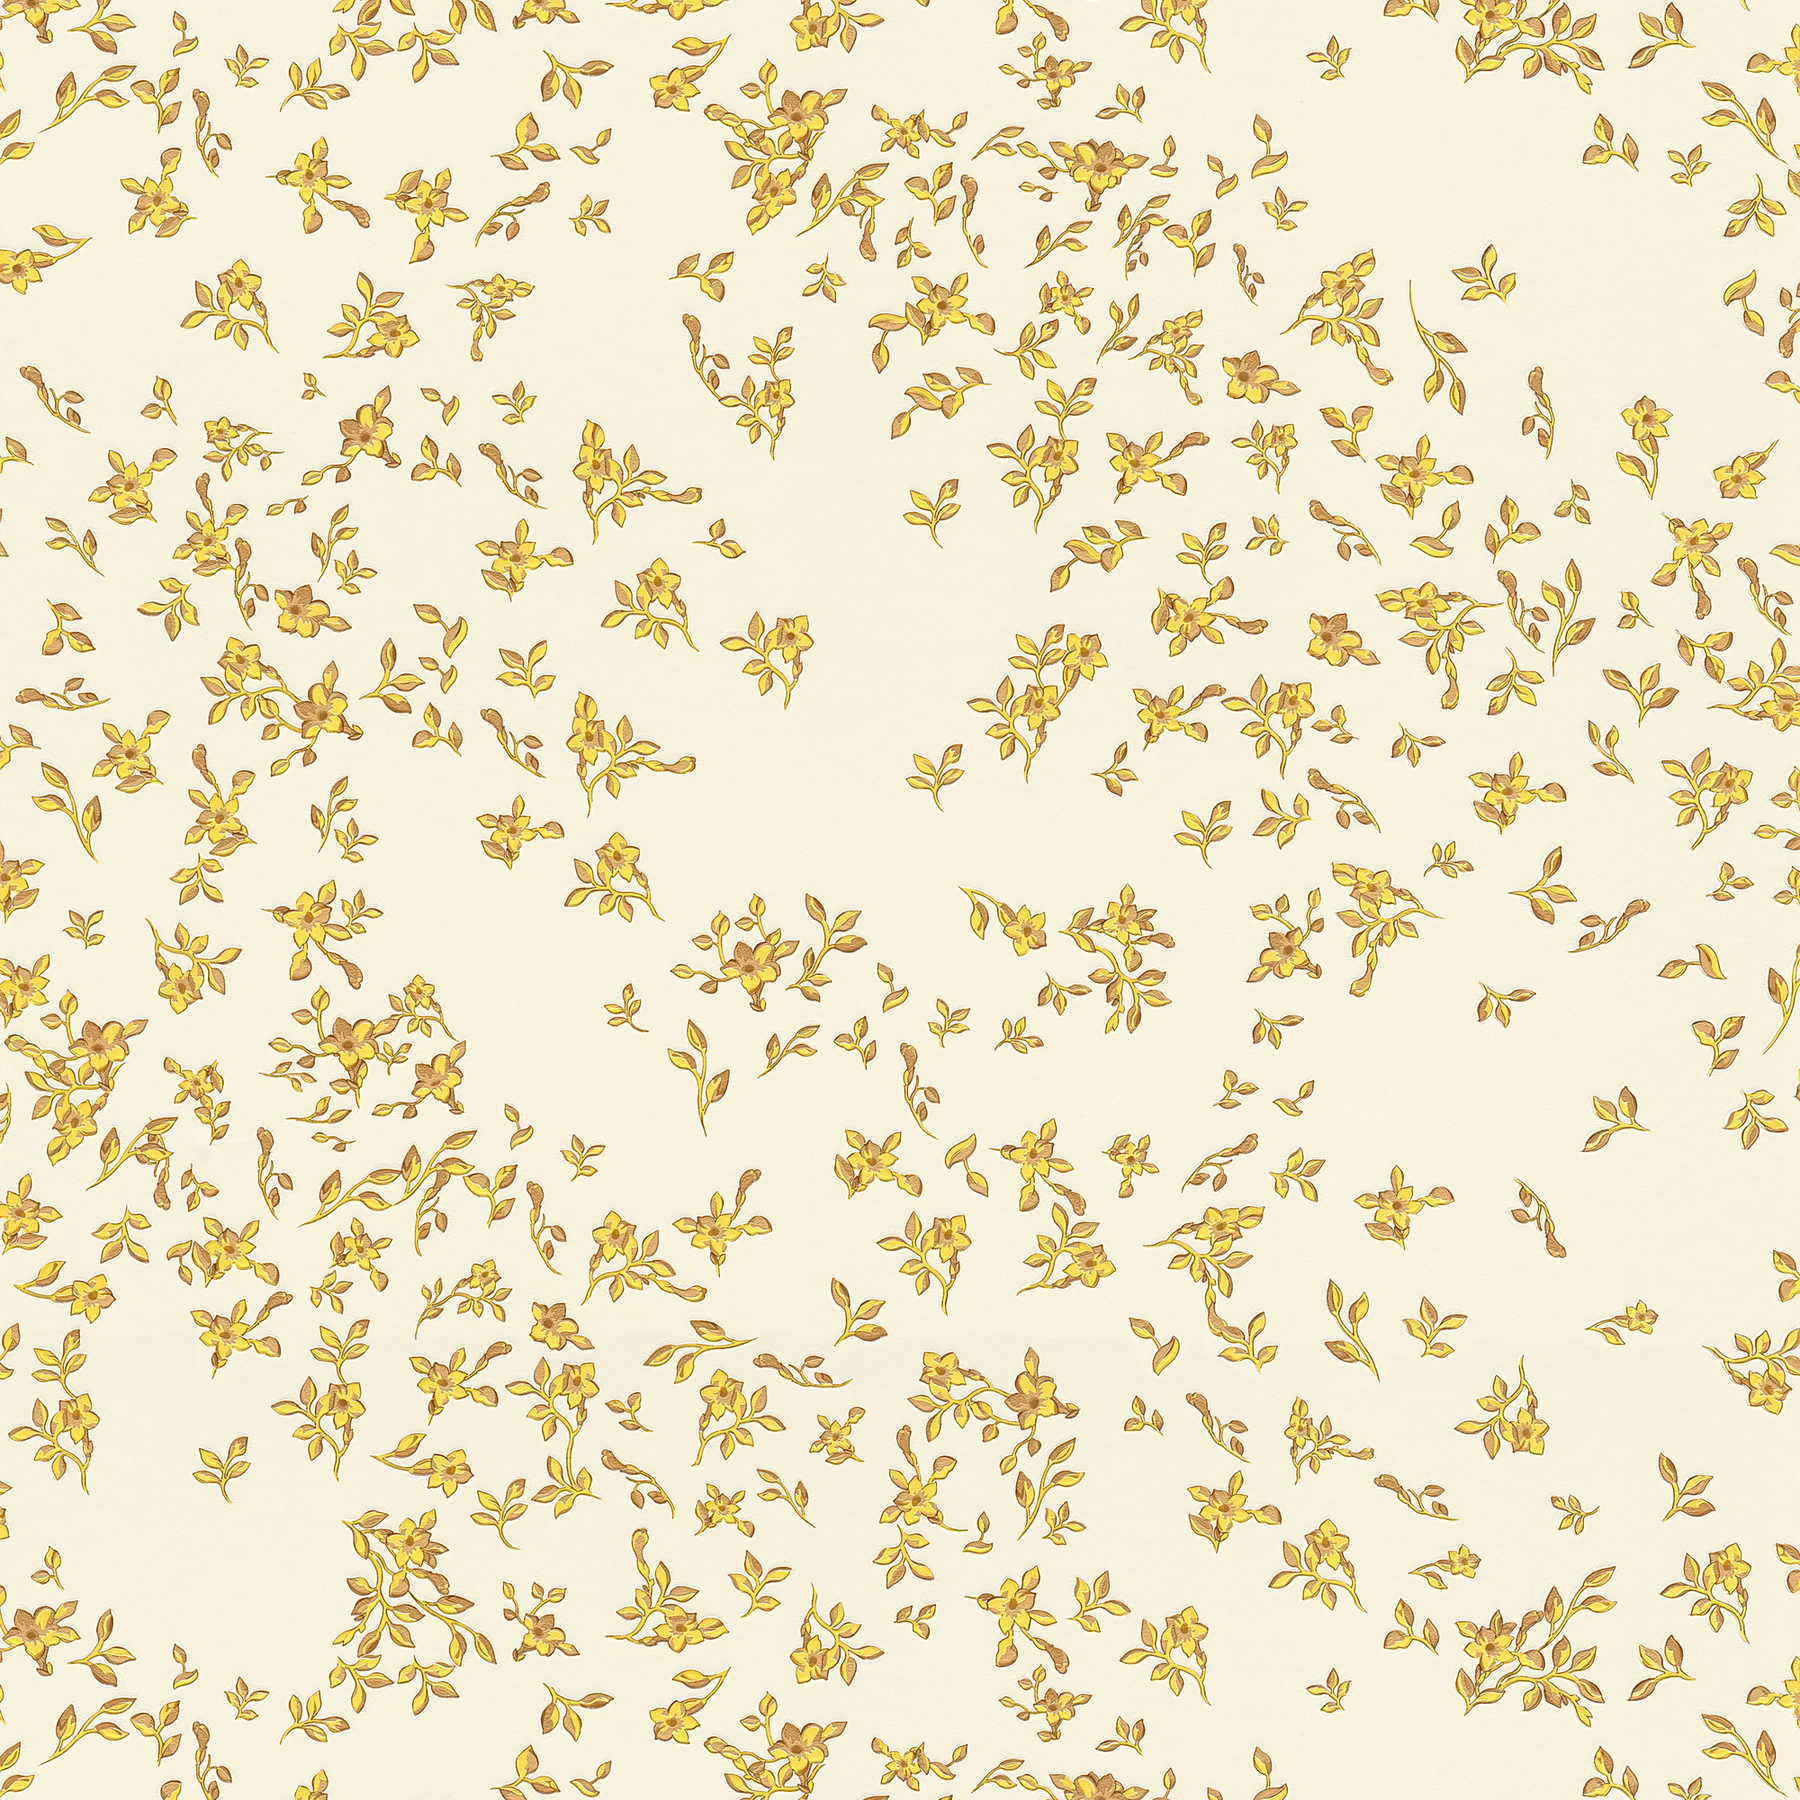 VERSACE Papier peint à fines fleurs dorées - or, jaune, beige
